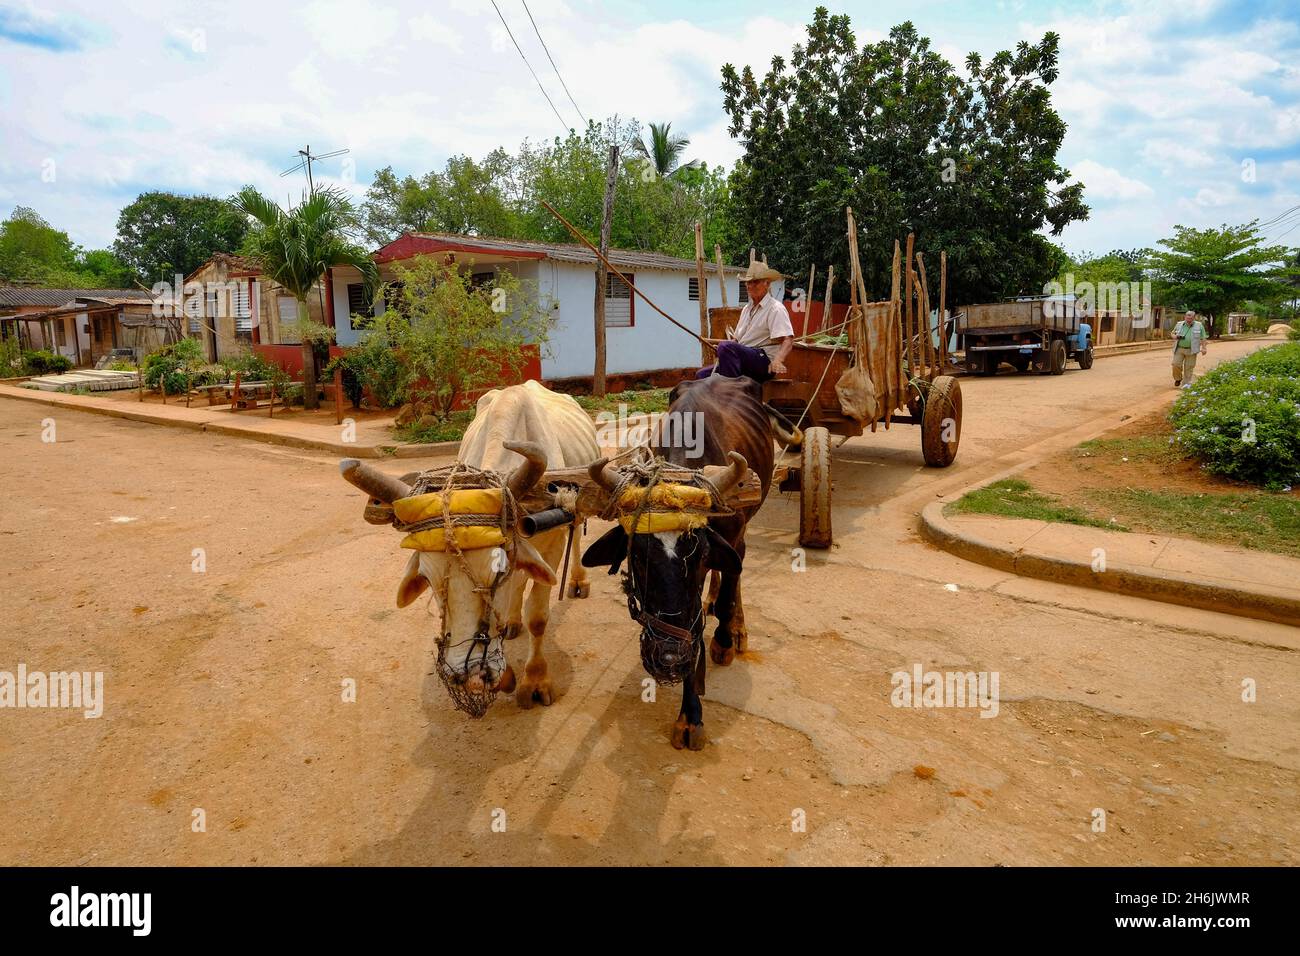 Ein Landwirt fährt einen Wagen, der von zwei Tieren gezogen wird: Australien, Matanzas, Kuba, Westindische Inseln, Mittelamerika Stockfoto